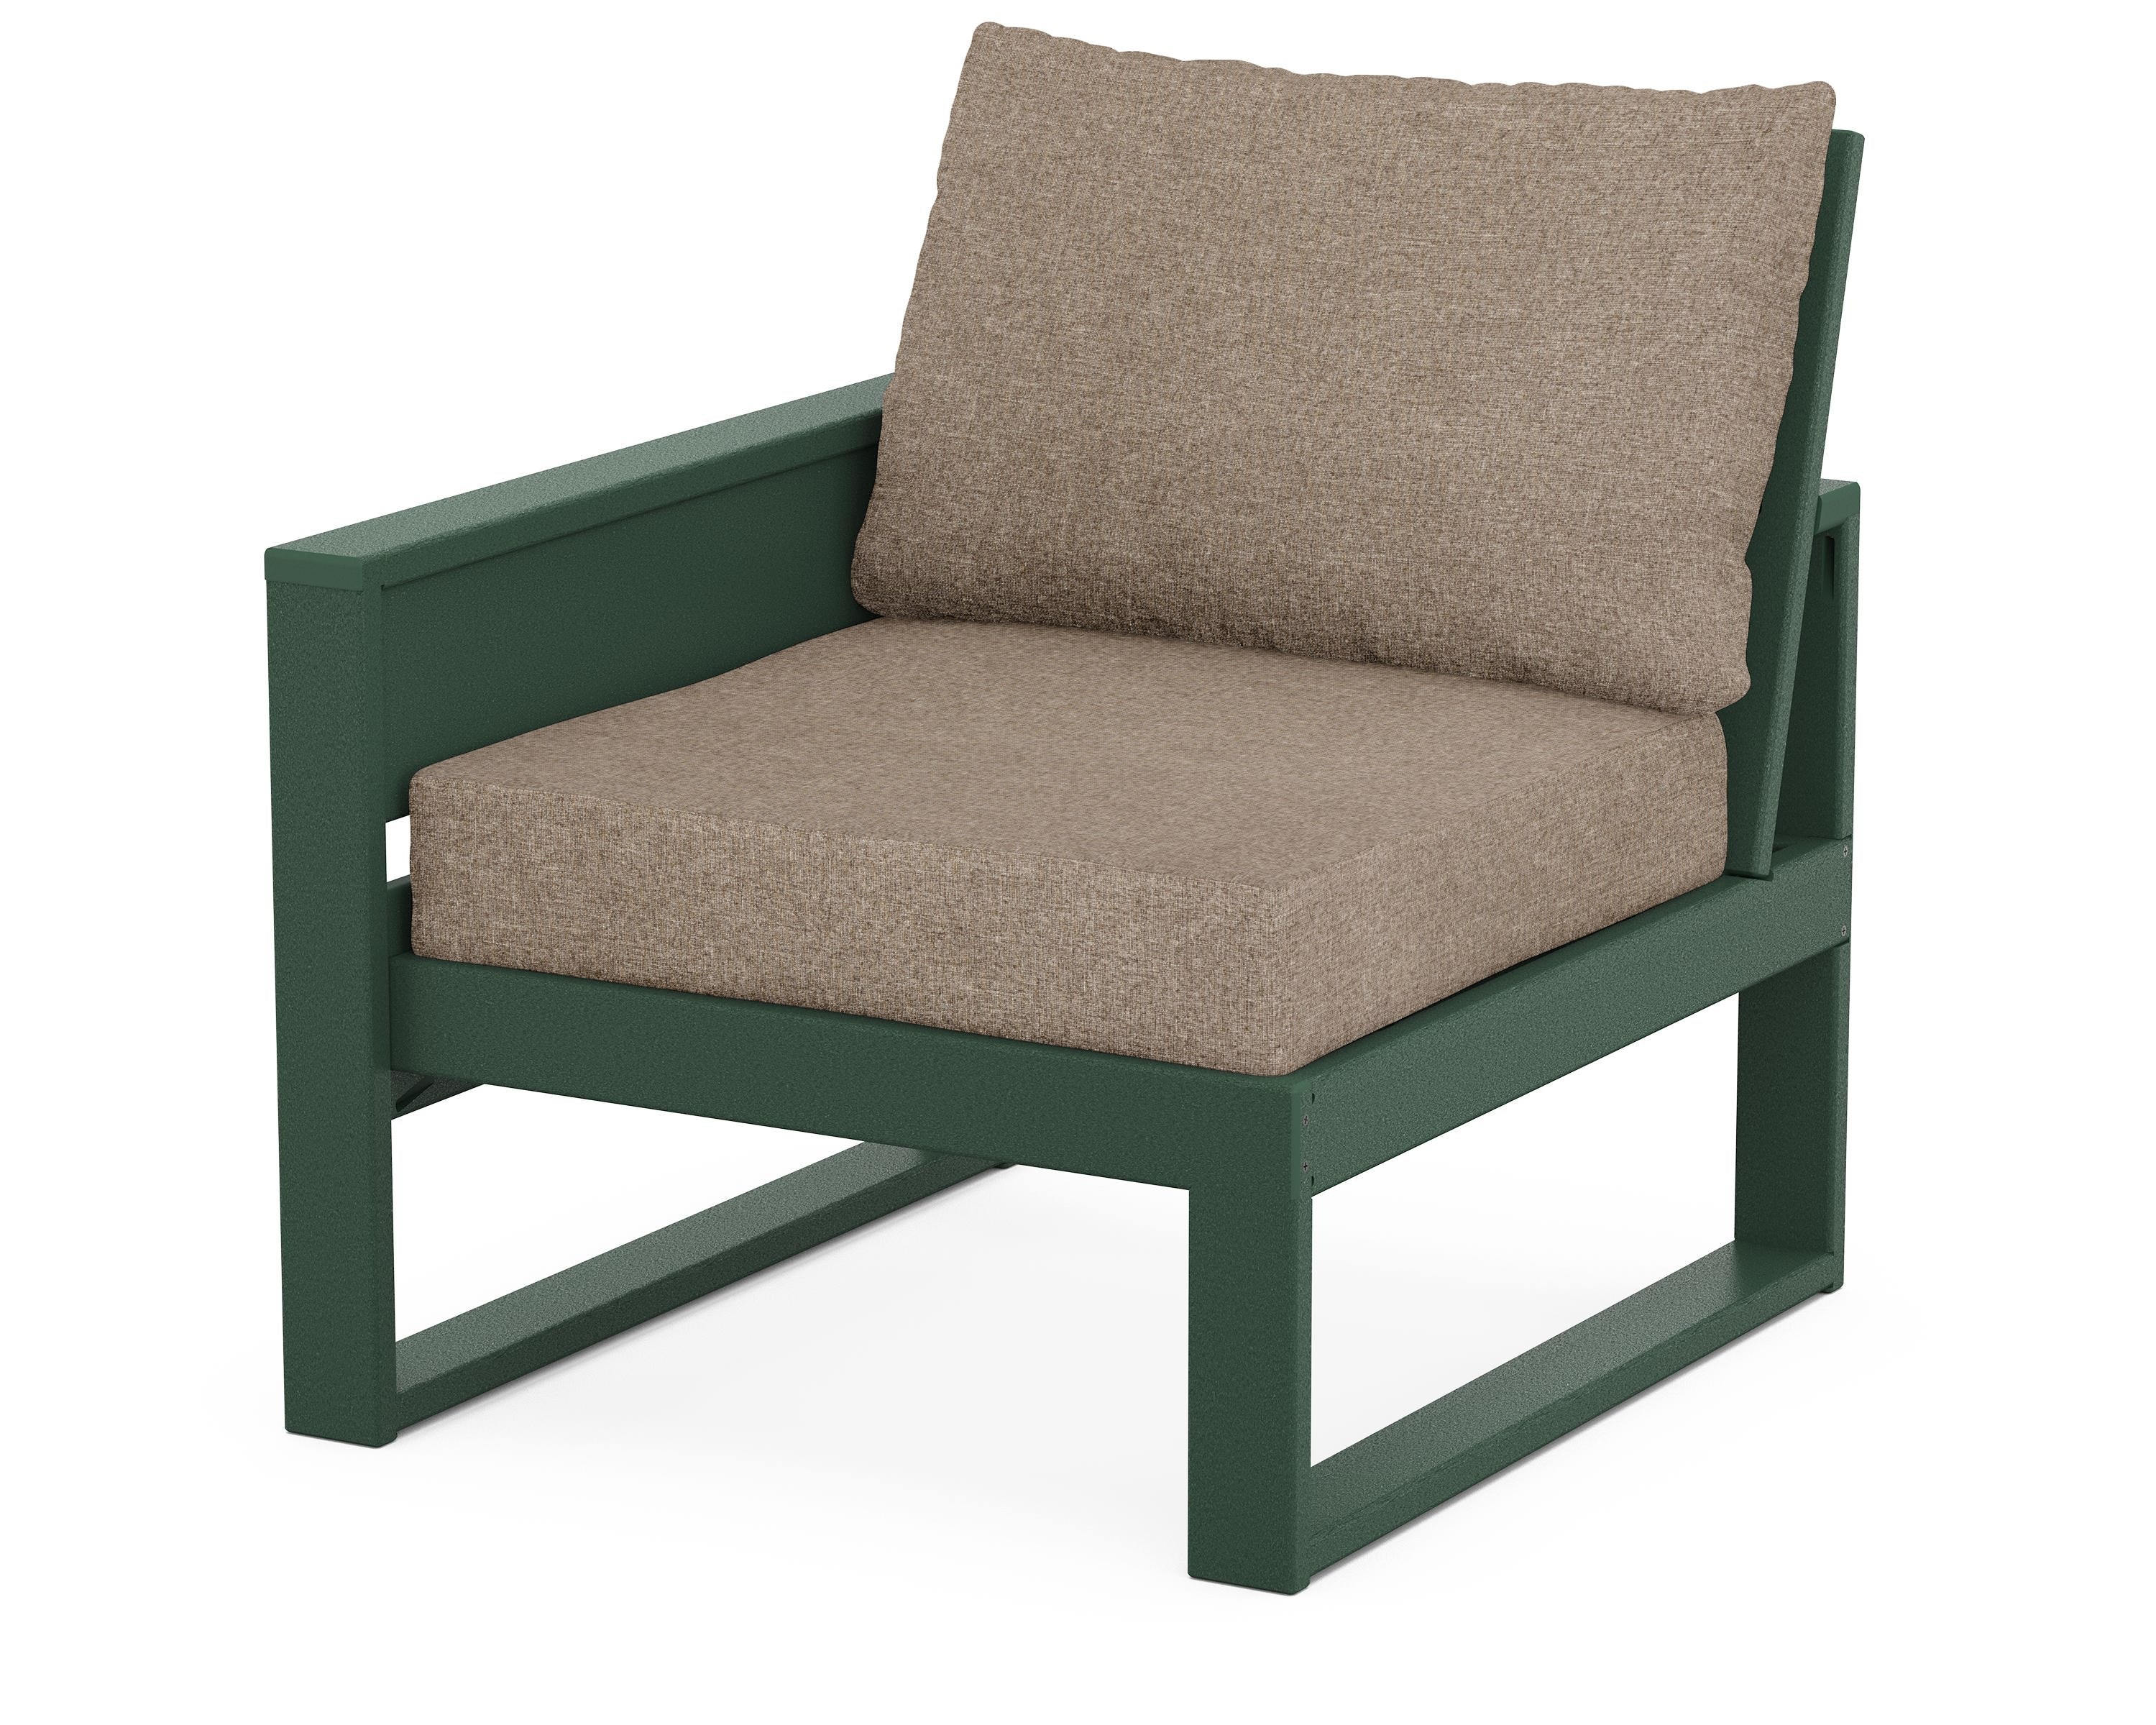 Trex Outdoor Furniture Eastport Modular Left Arm Chair